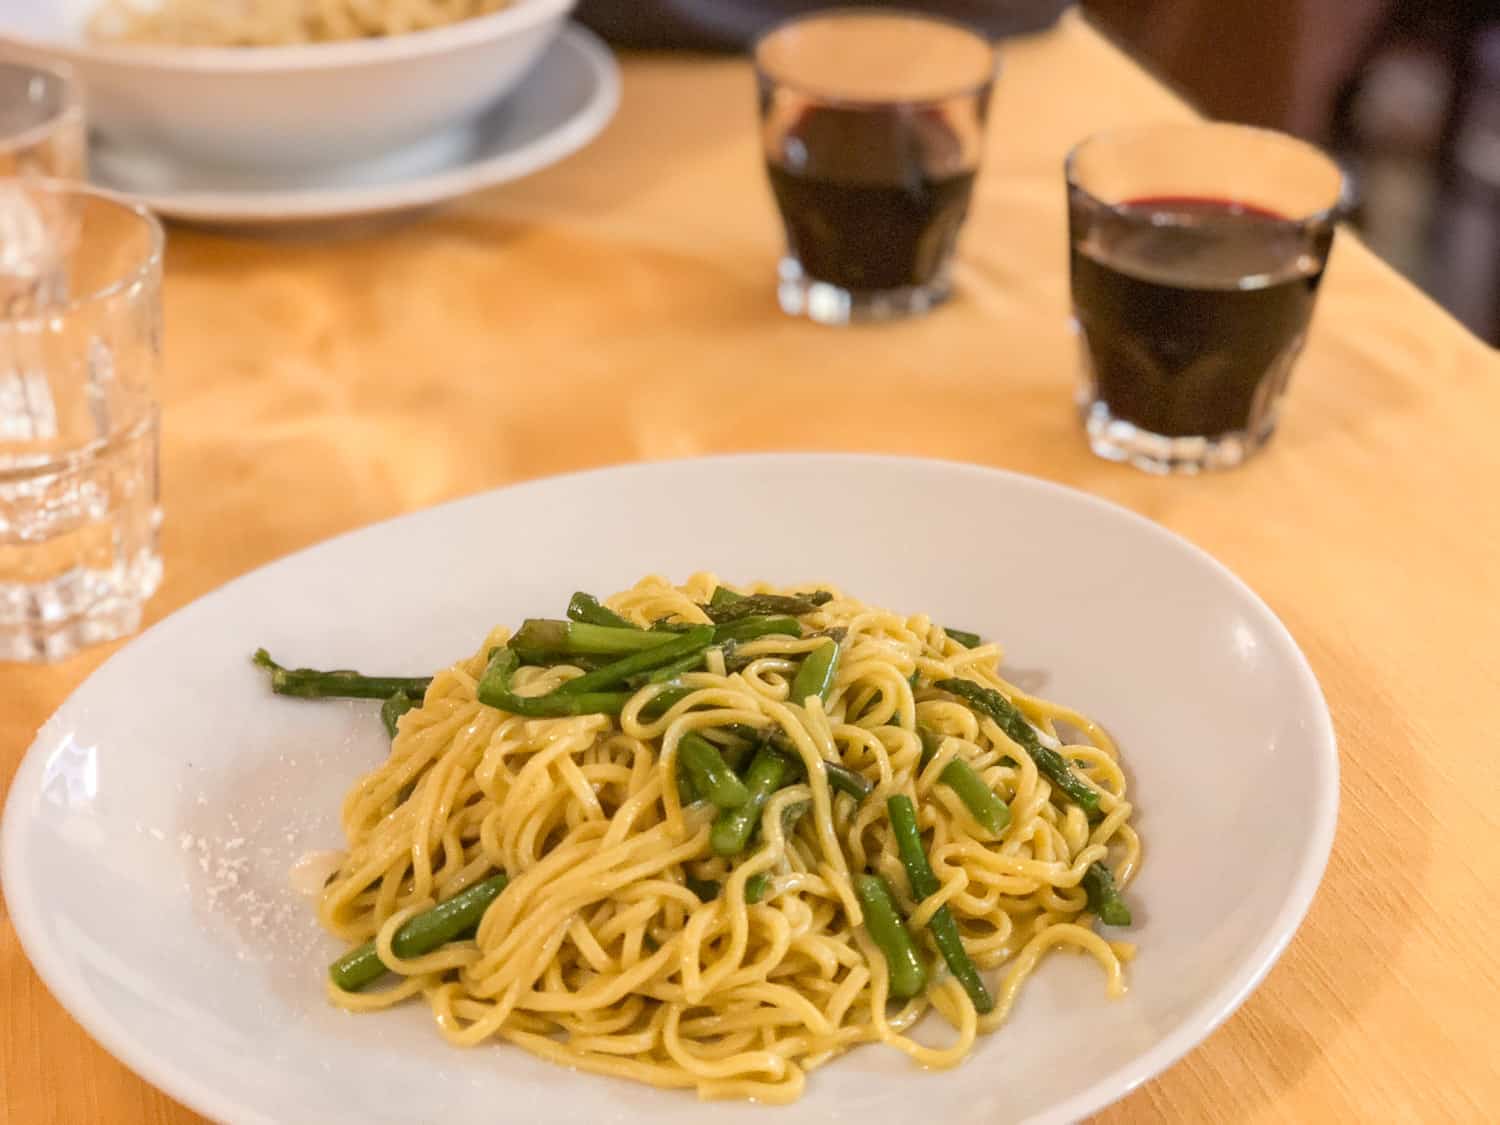 The simple but delicious taglioni with wild asparagus and garlic at Piatto Romano